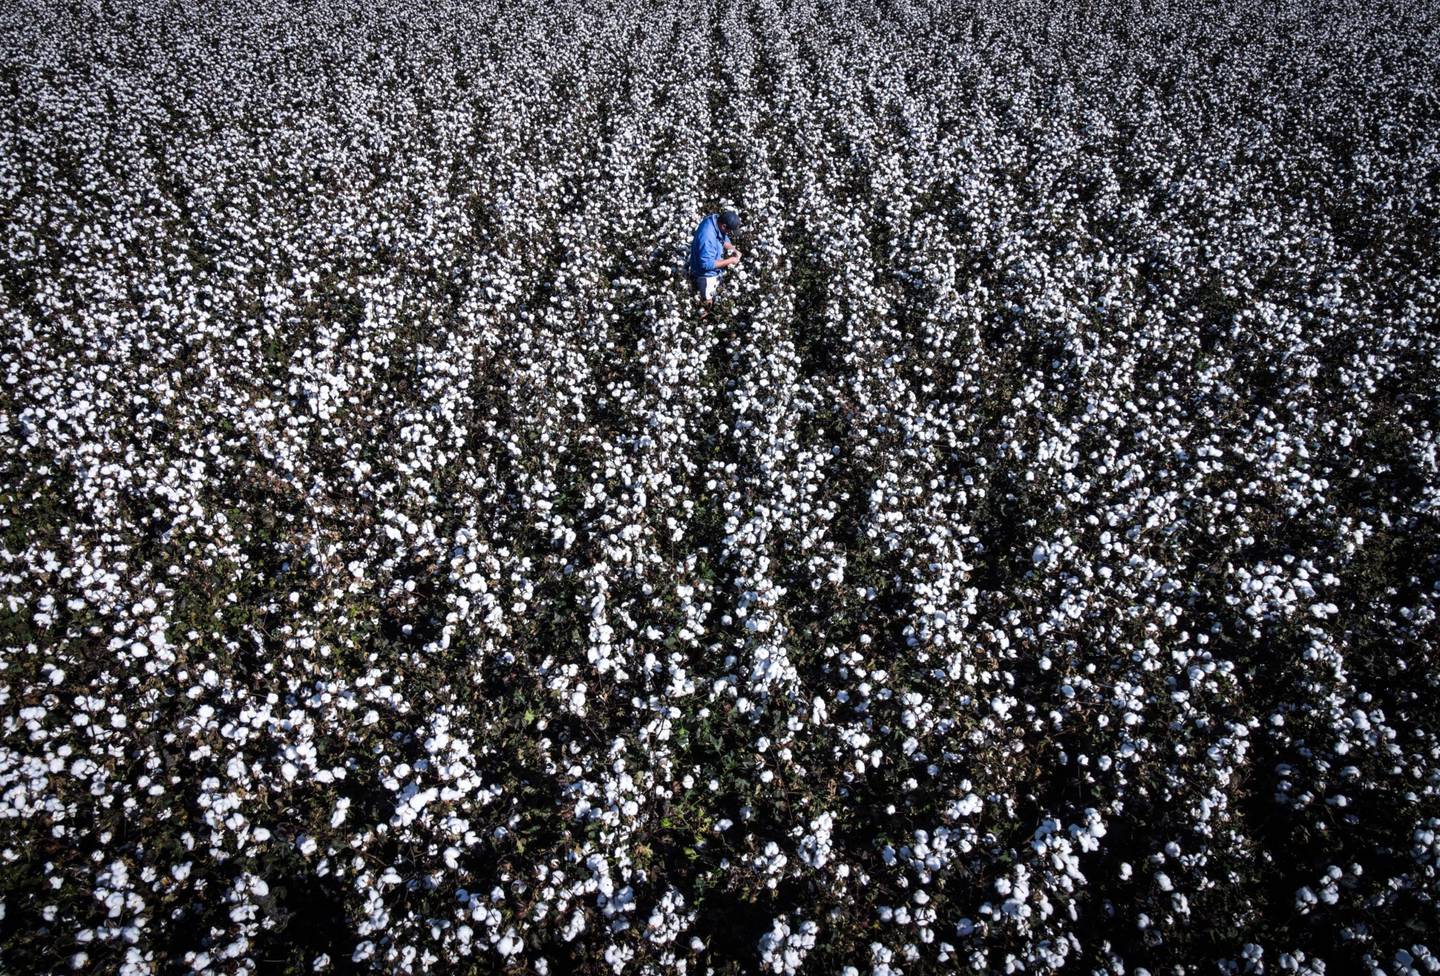 Un agricultor inspecciona plantas de algodón en un campo.dfd